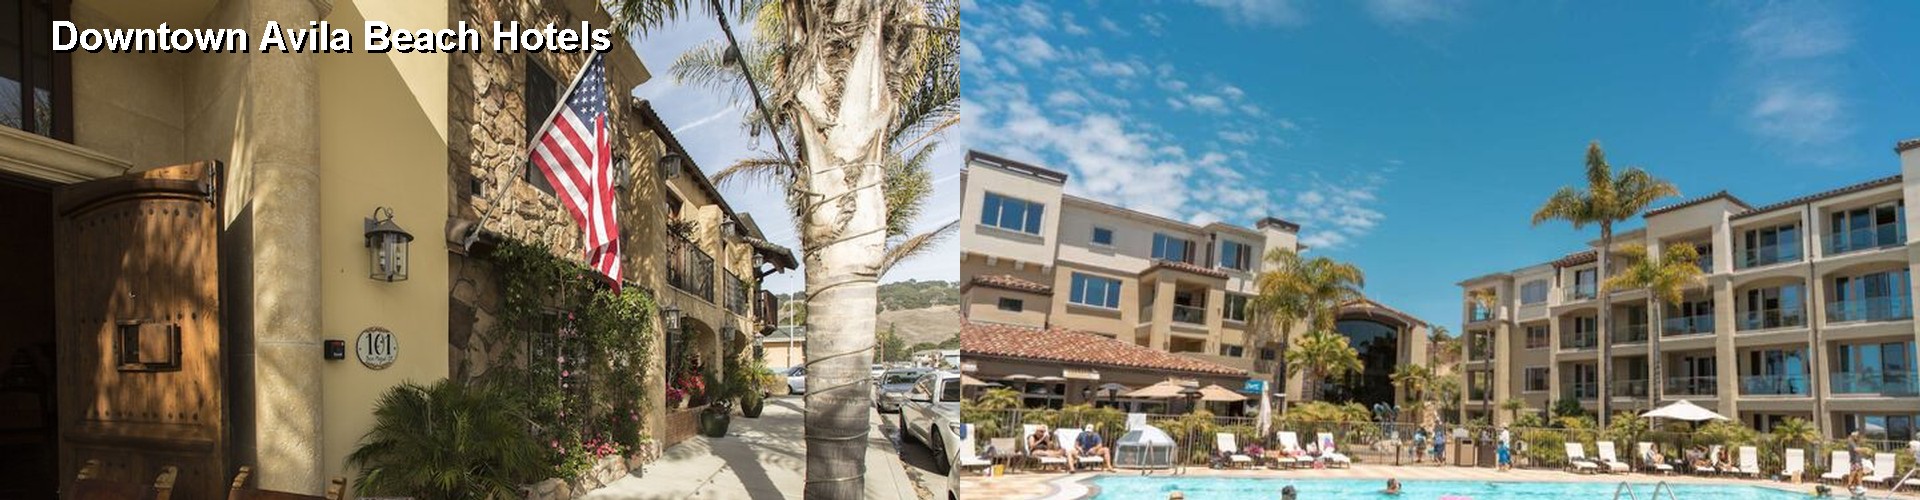 5 Best Hotels near Downtown Avila Beach